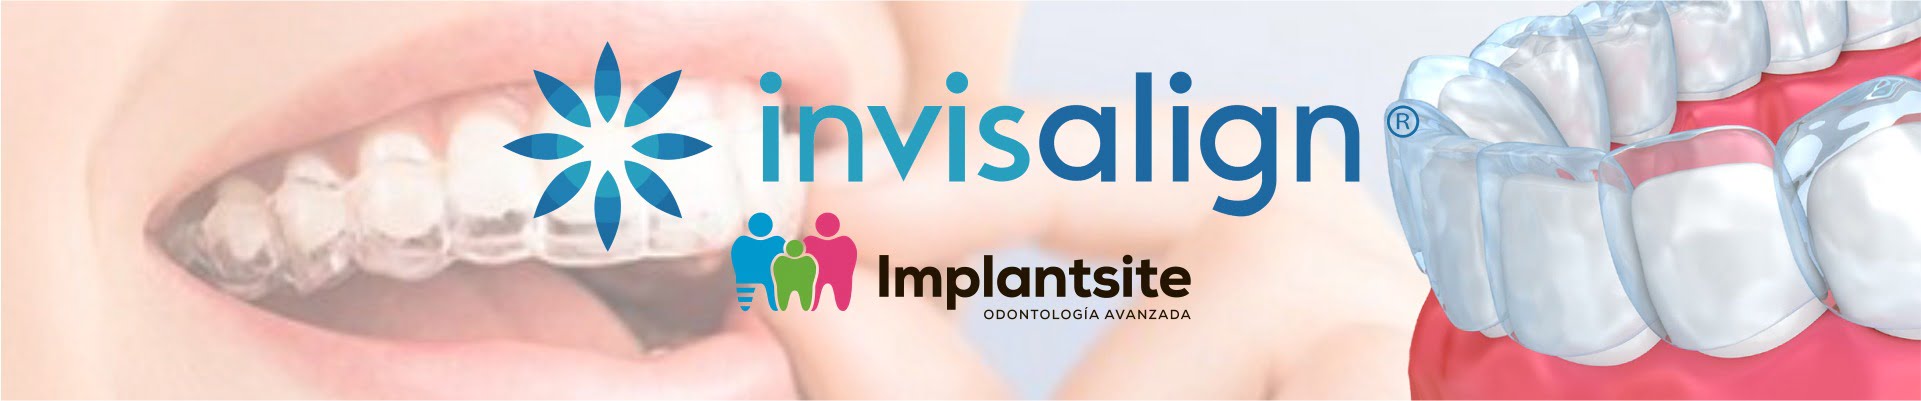 ortodoncia invisible, en clínica dental Implantsite somos expertos en invisalign